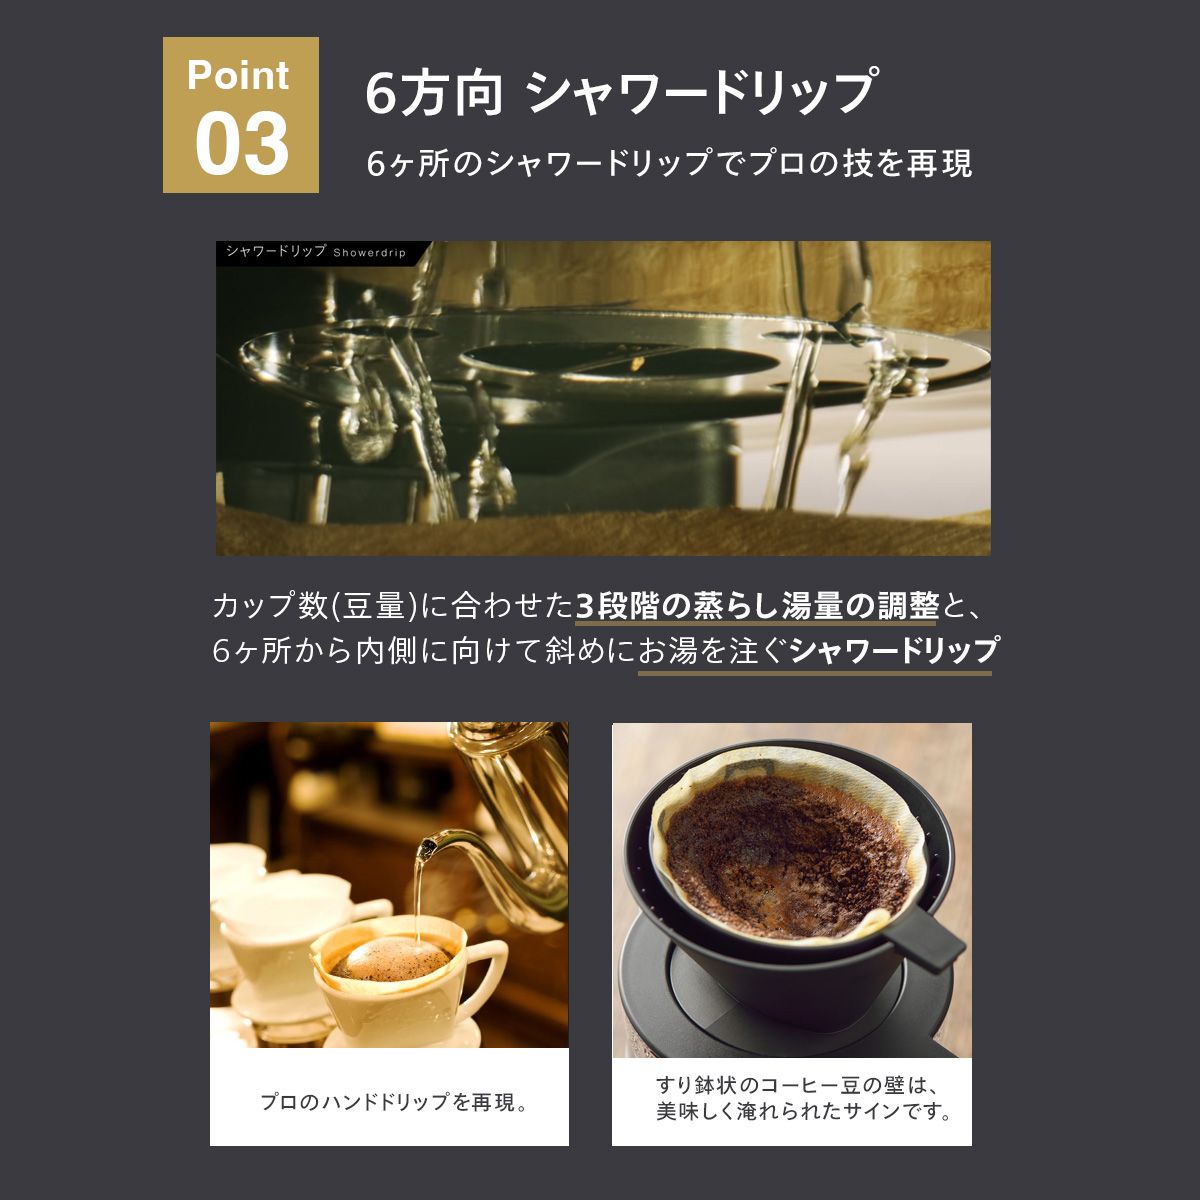 ツインバード 全自動コーヒーメーカー 6杯用 カフェバッハオリジナルフィルターセット CM-D465B-A05 日本製 ブラック